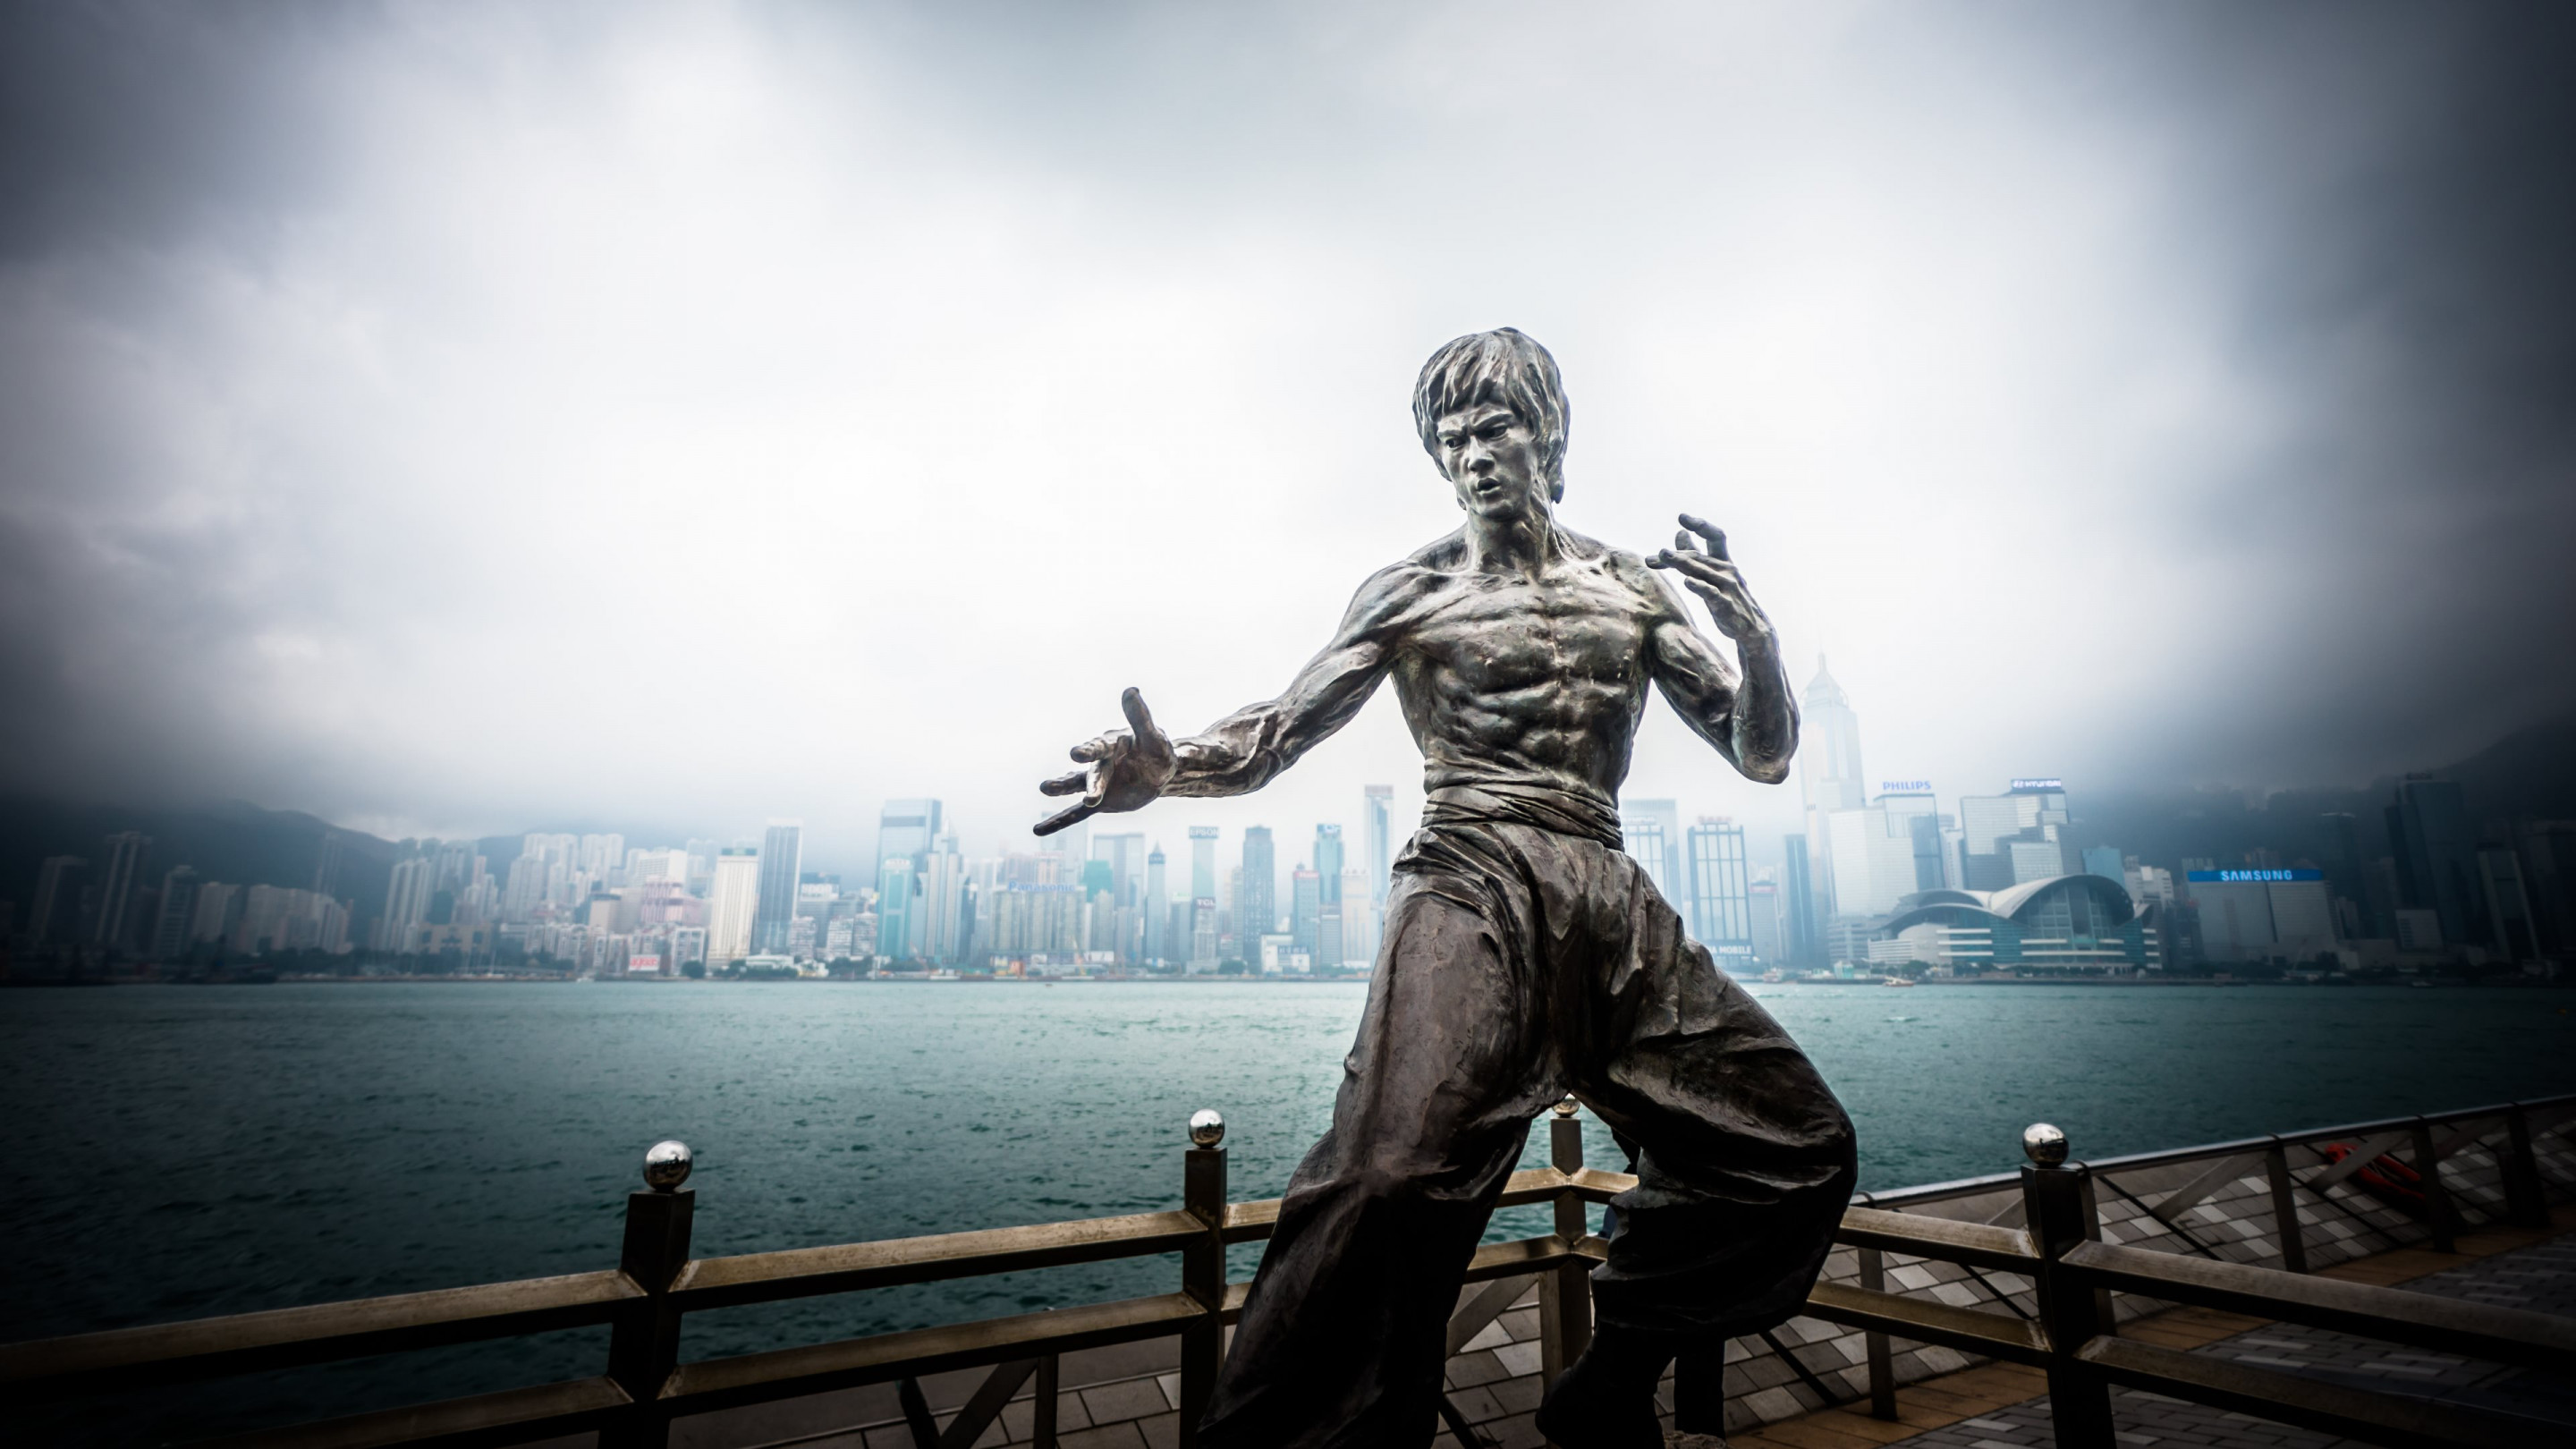 Bruce Lee statue from Hong Kong wallpaper 2880x1620